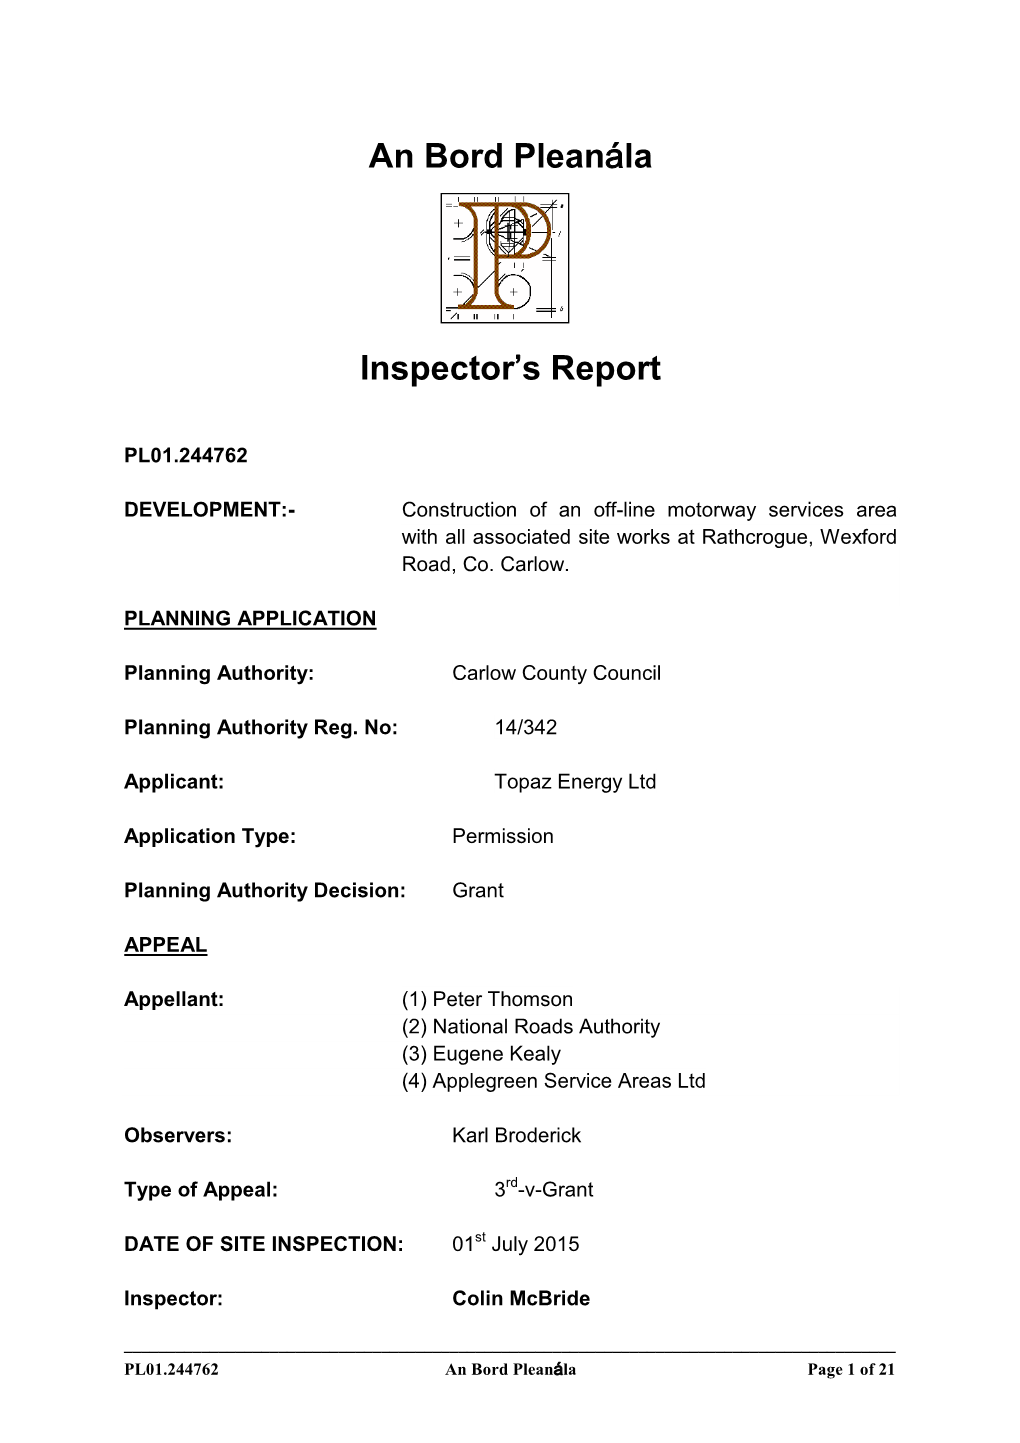 An Bord Pleanála Inspector's Report